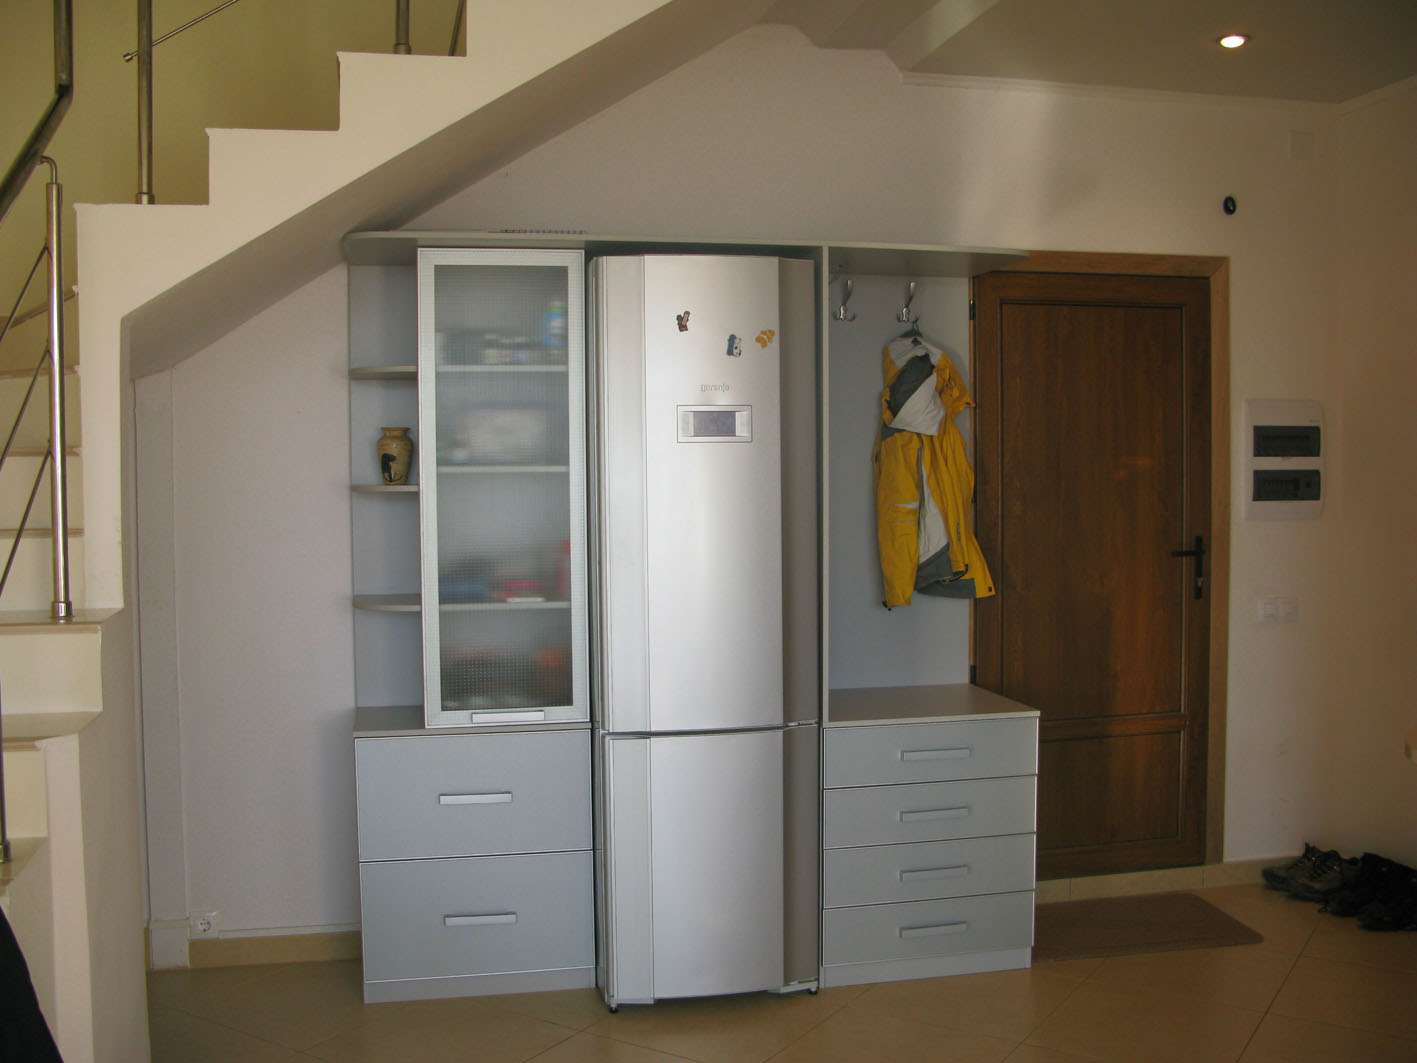 Картинки по запросу "Куда поставить холодильник в маленькой кухне"